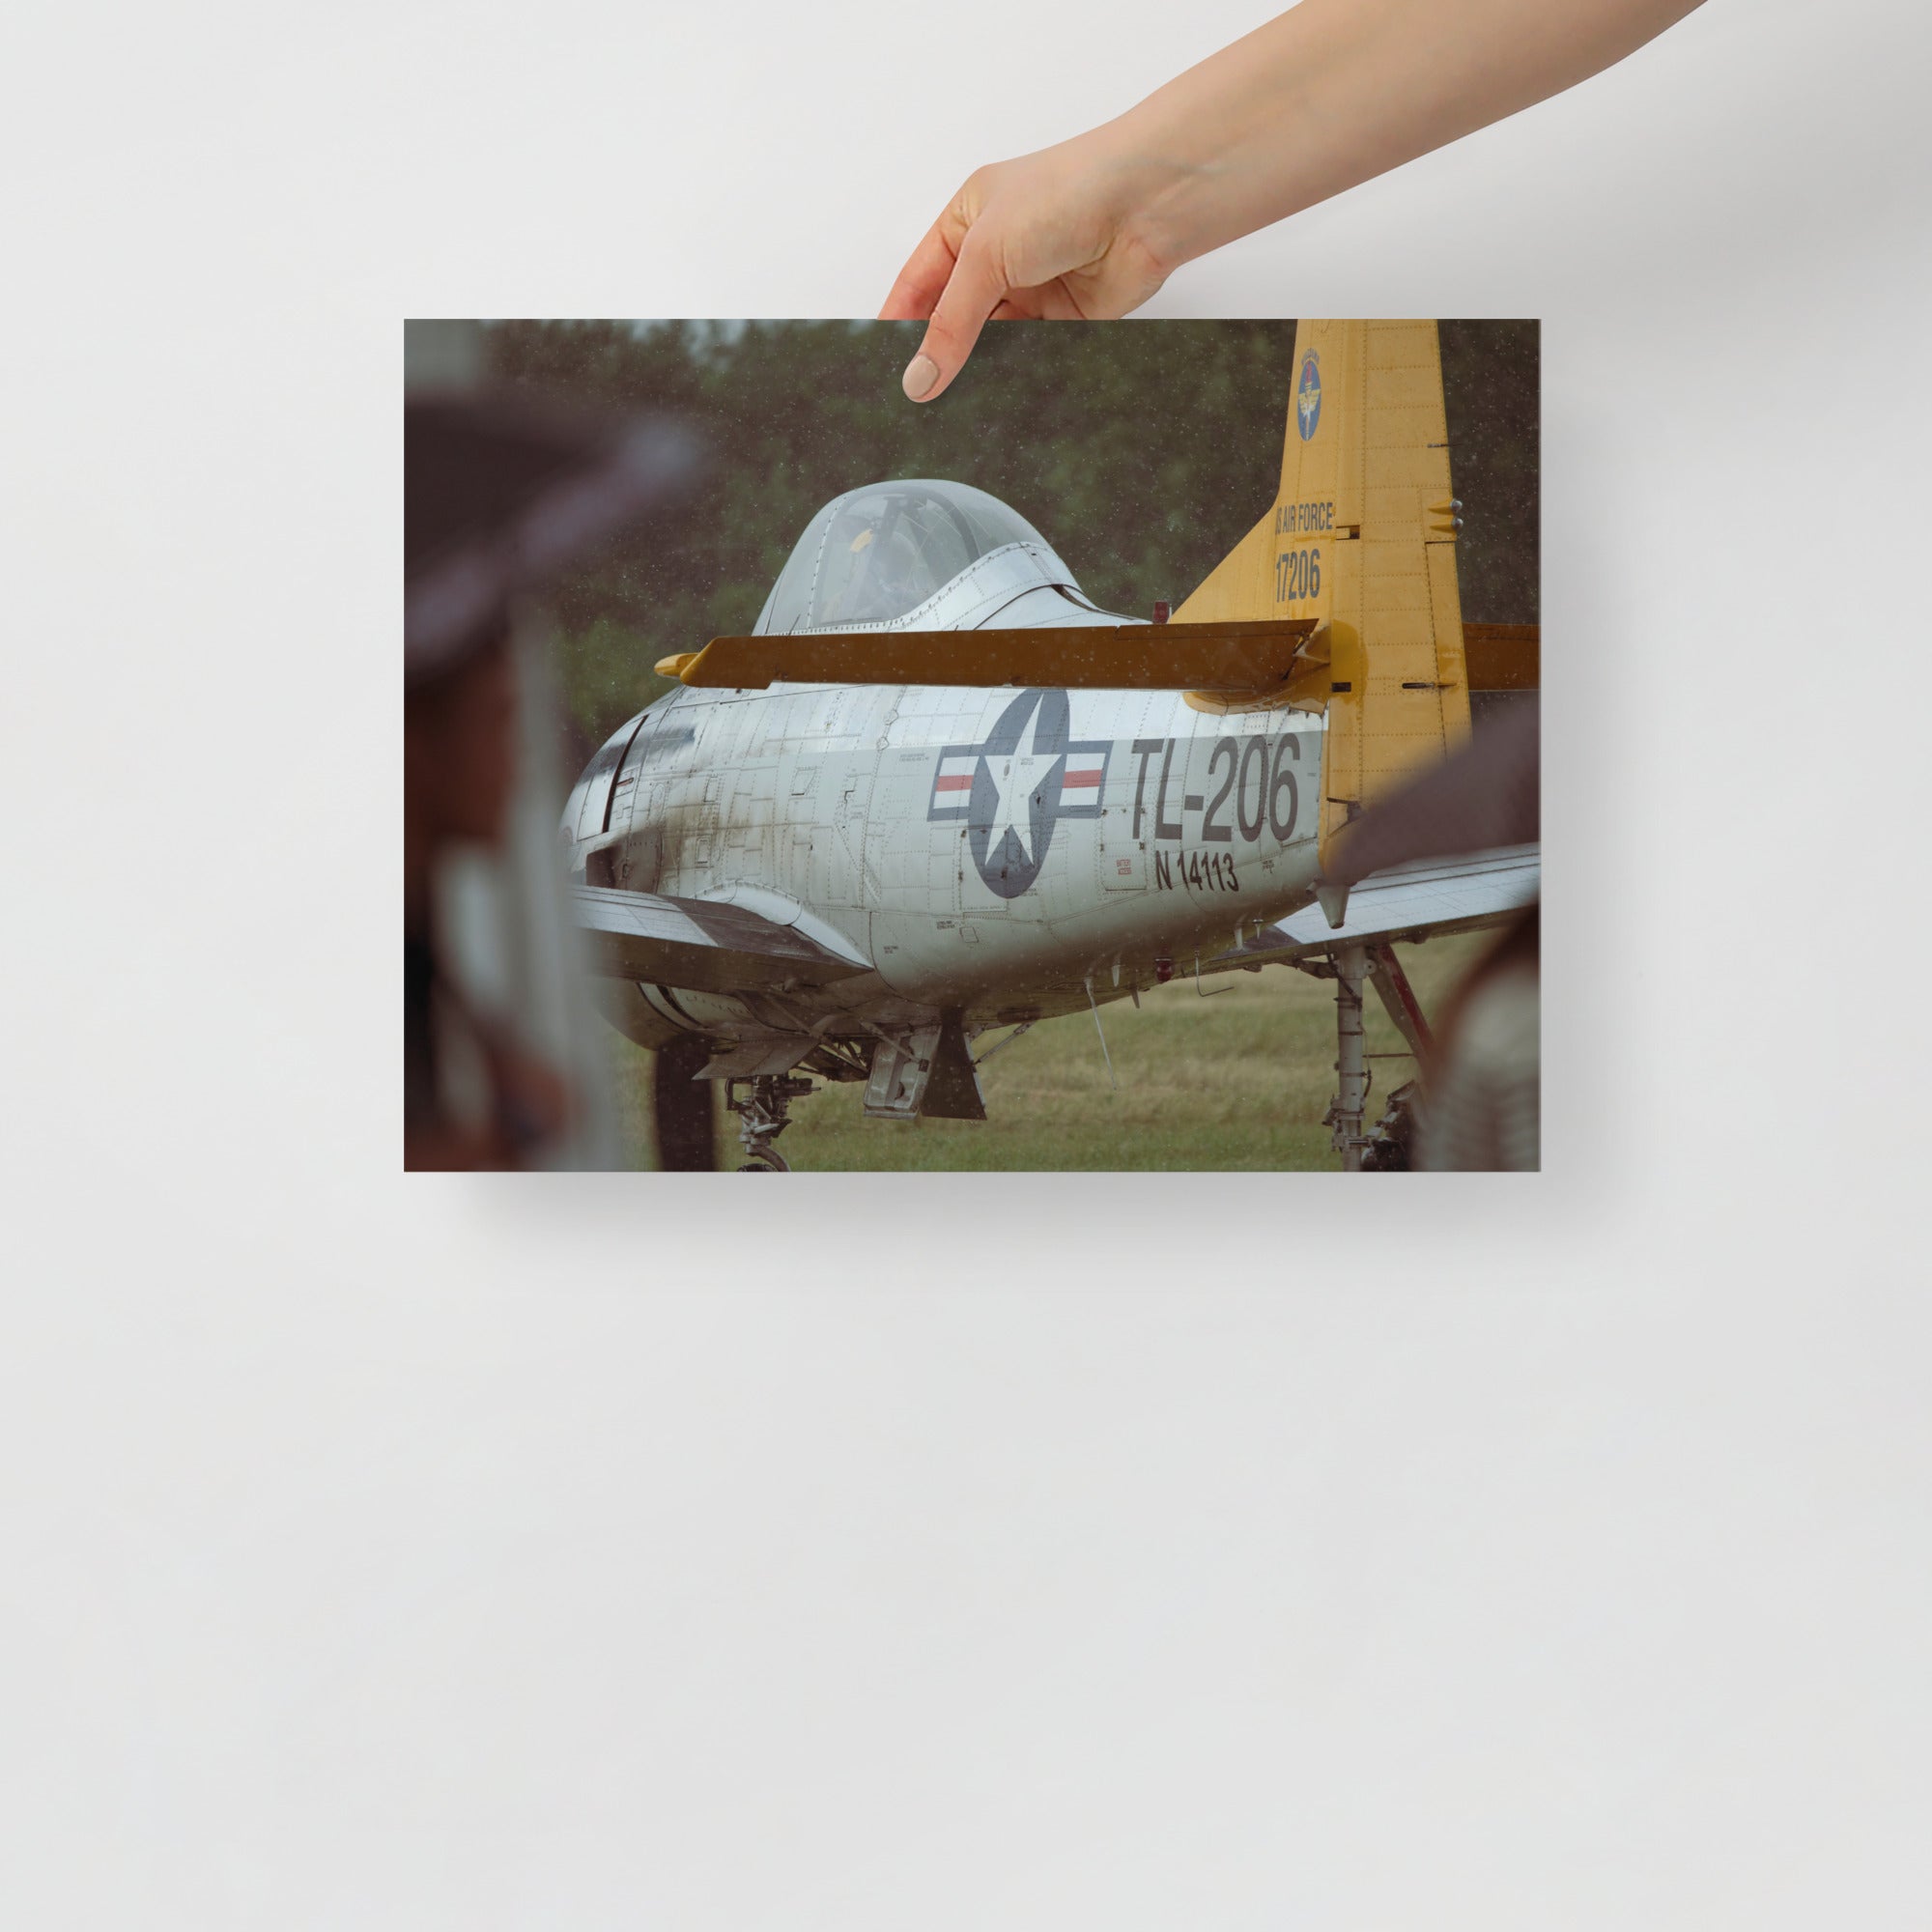 Poster mural - P-51 Mustang – Photographie d'avion de guerre – Poster photo, poster XXL, photographie murale et des posters muraux unique au monde. La boutique de posters créée par Yann Peccard un Photographe français.